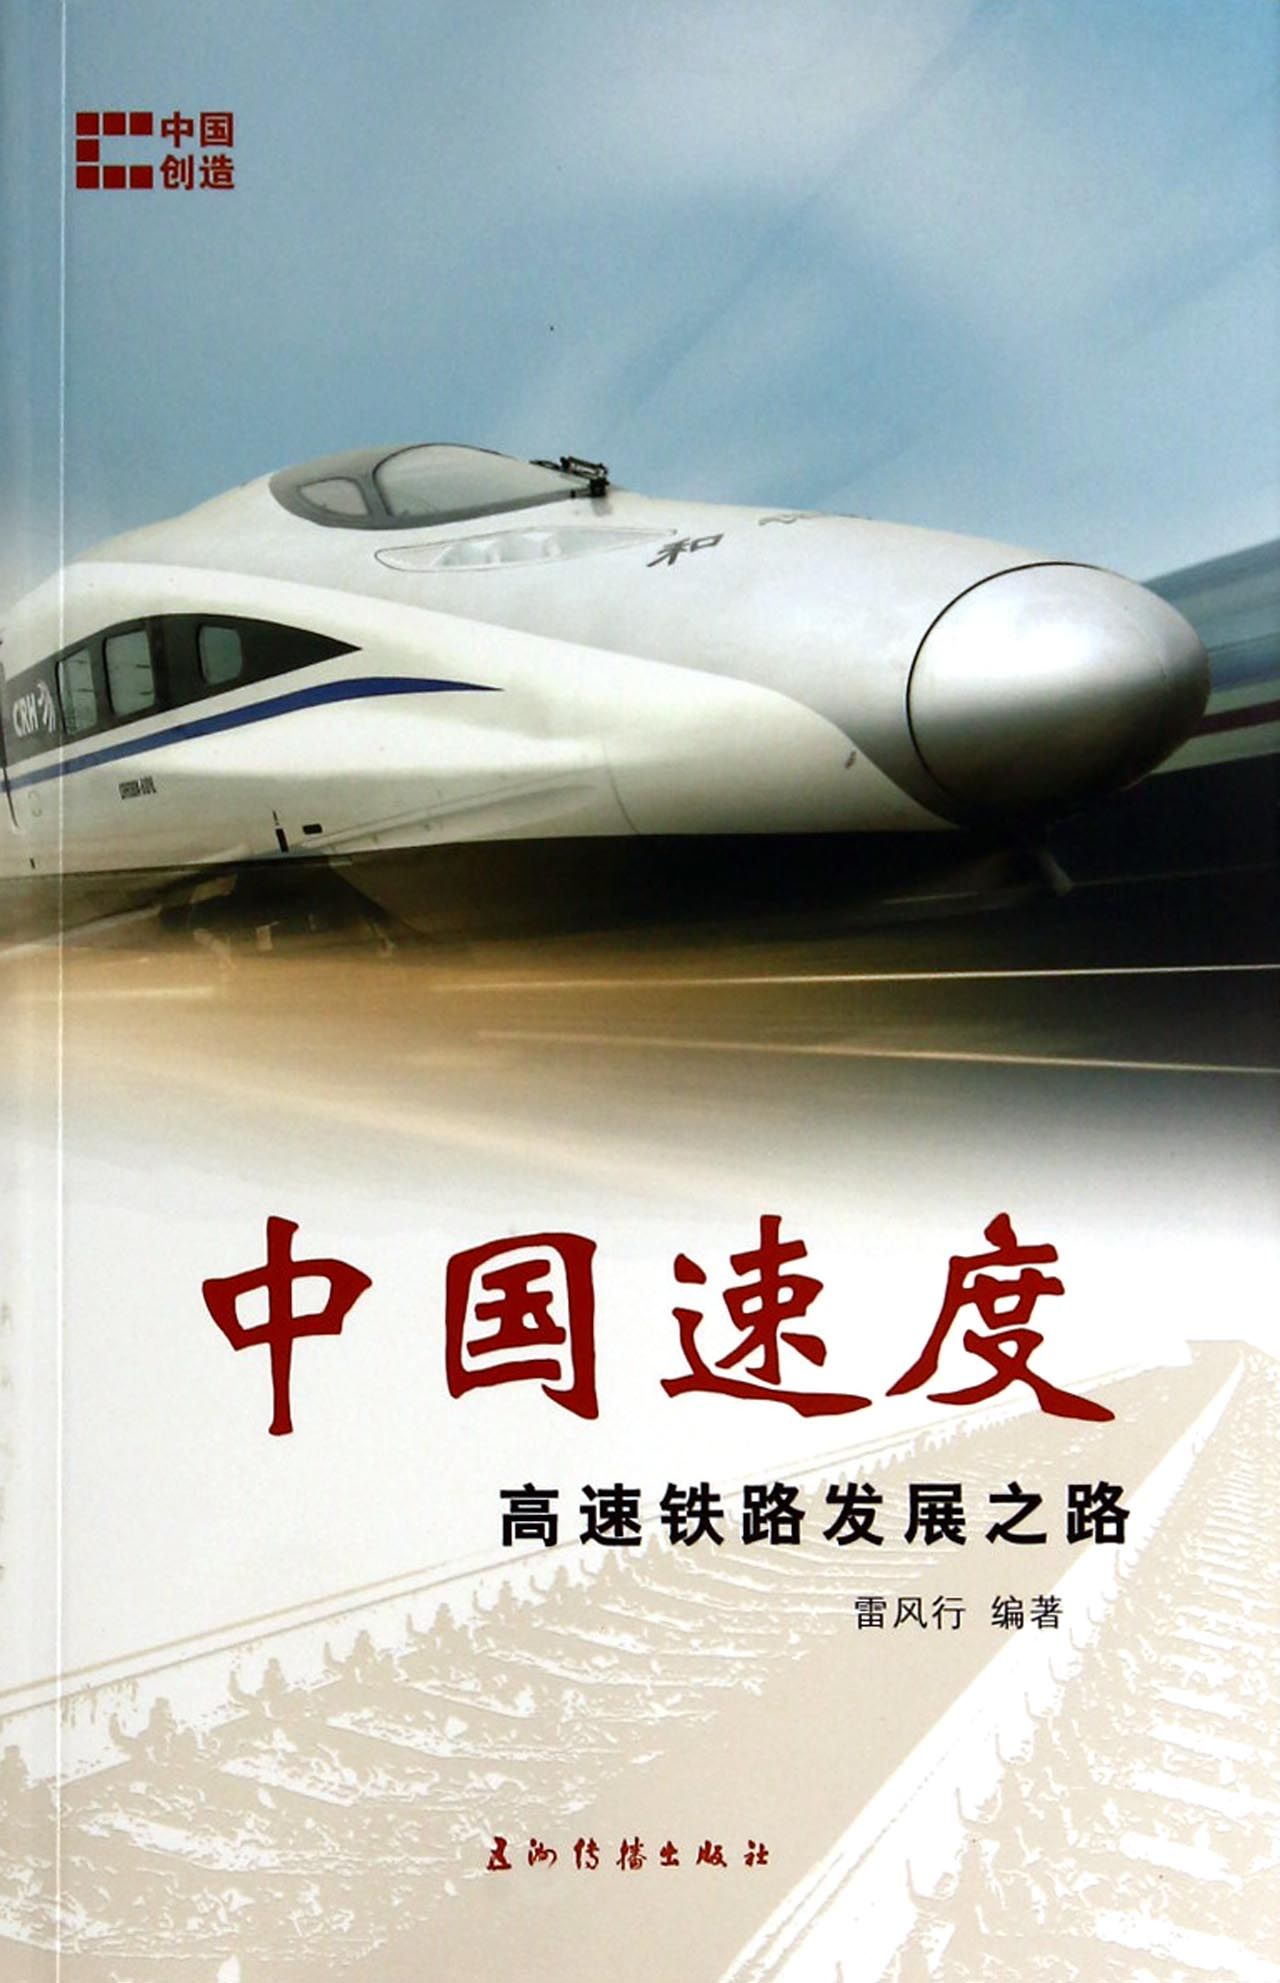 中国速度(高速铁路发展之路)